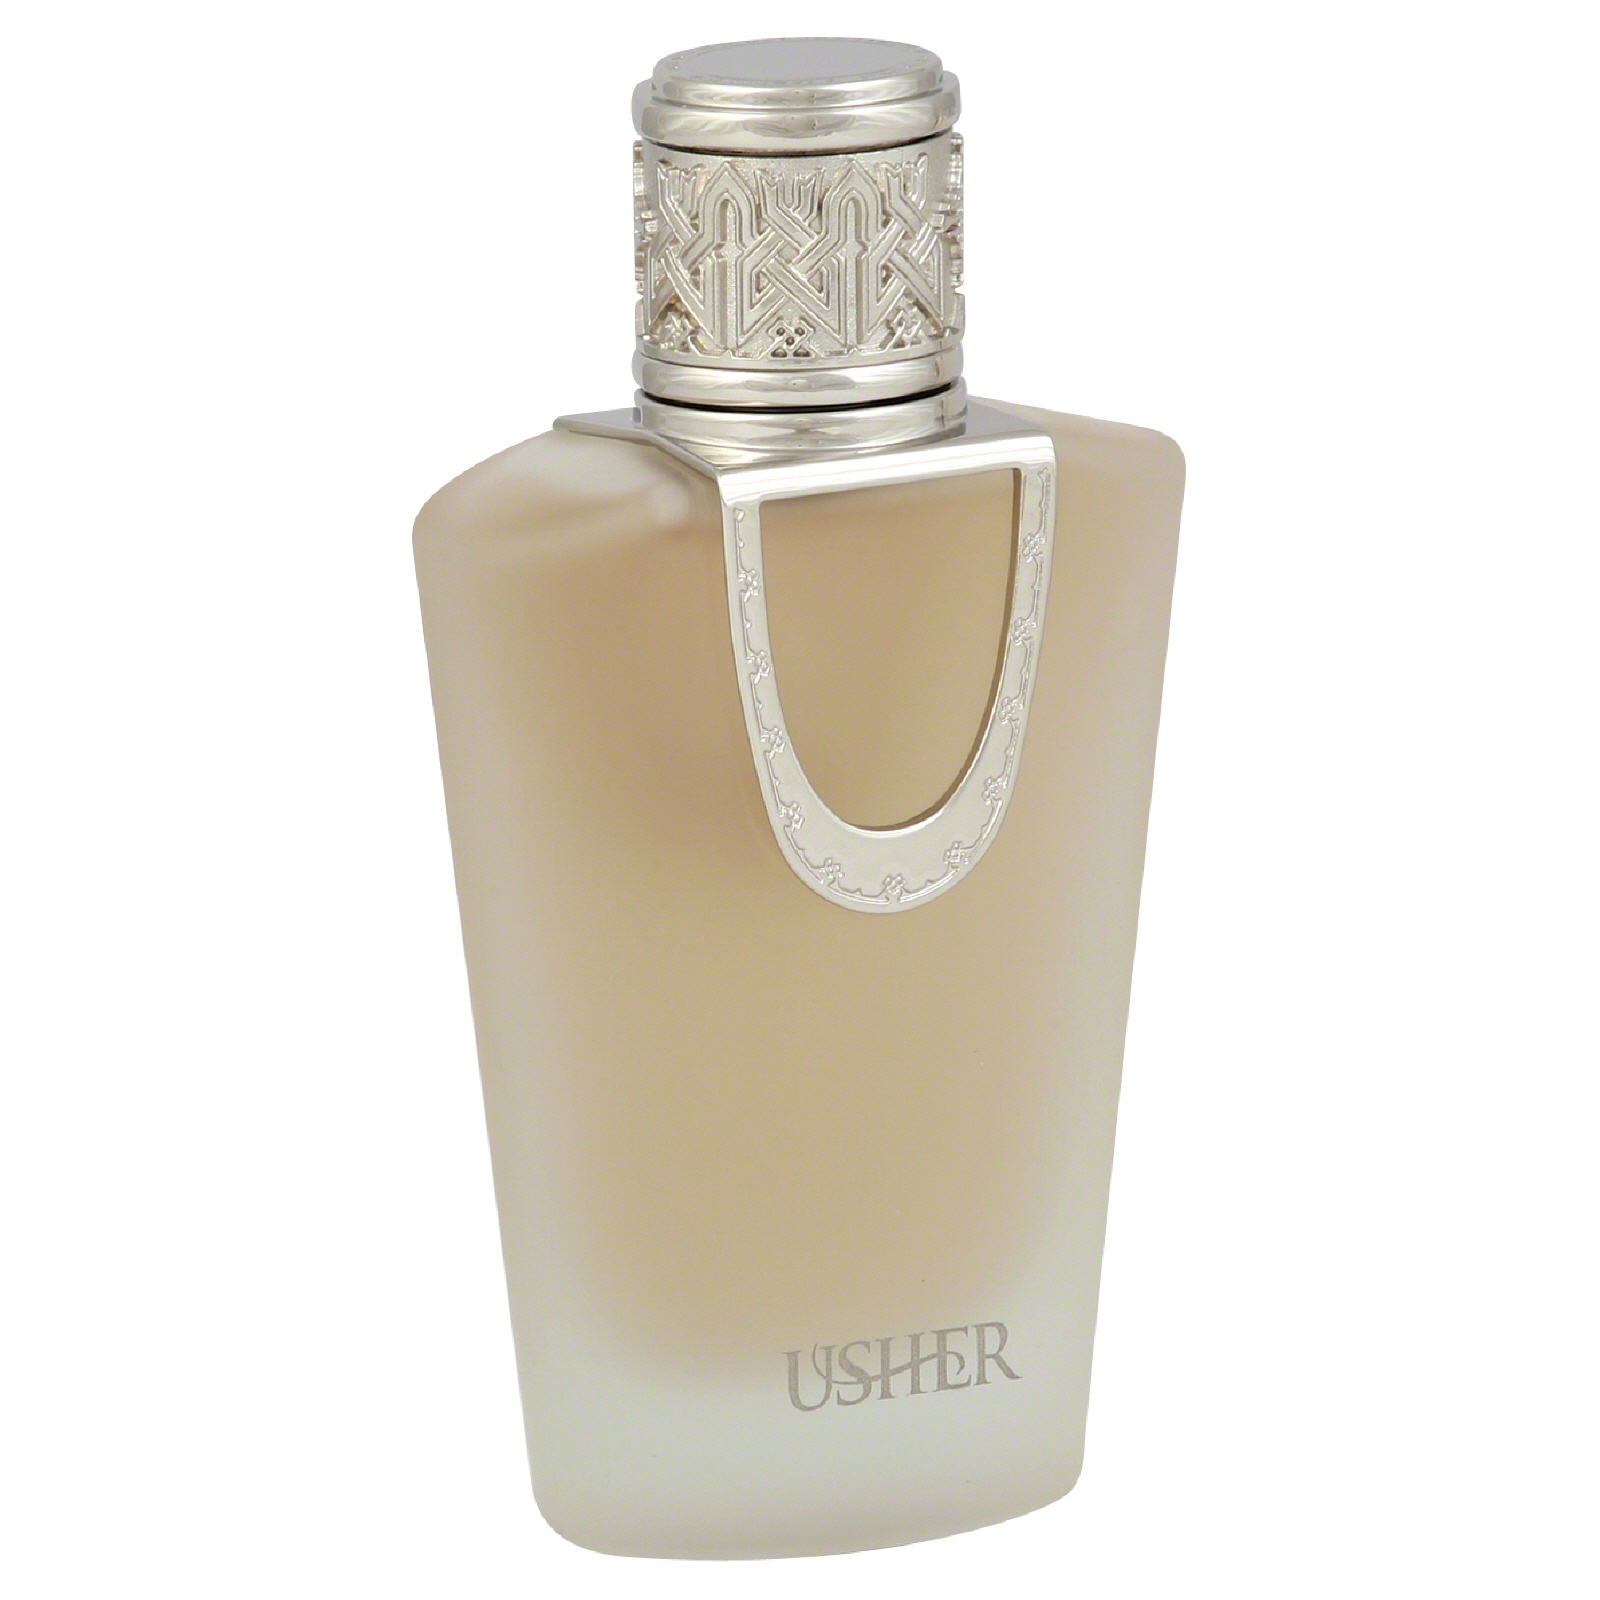 Usher Eau de Parfum Spray, 1.7 fl oz (50 ml)